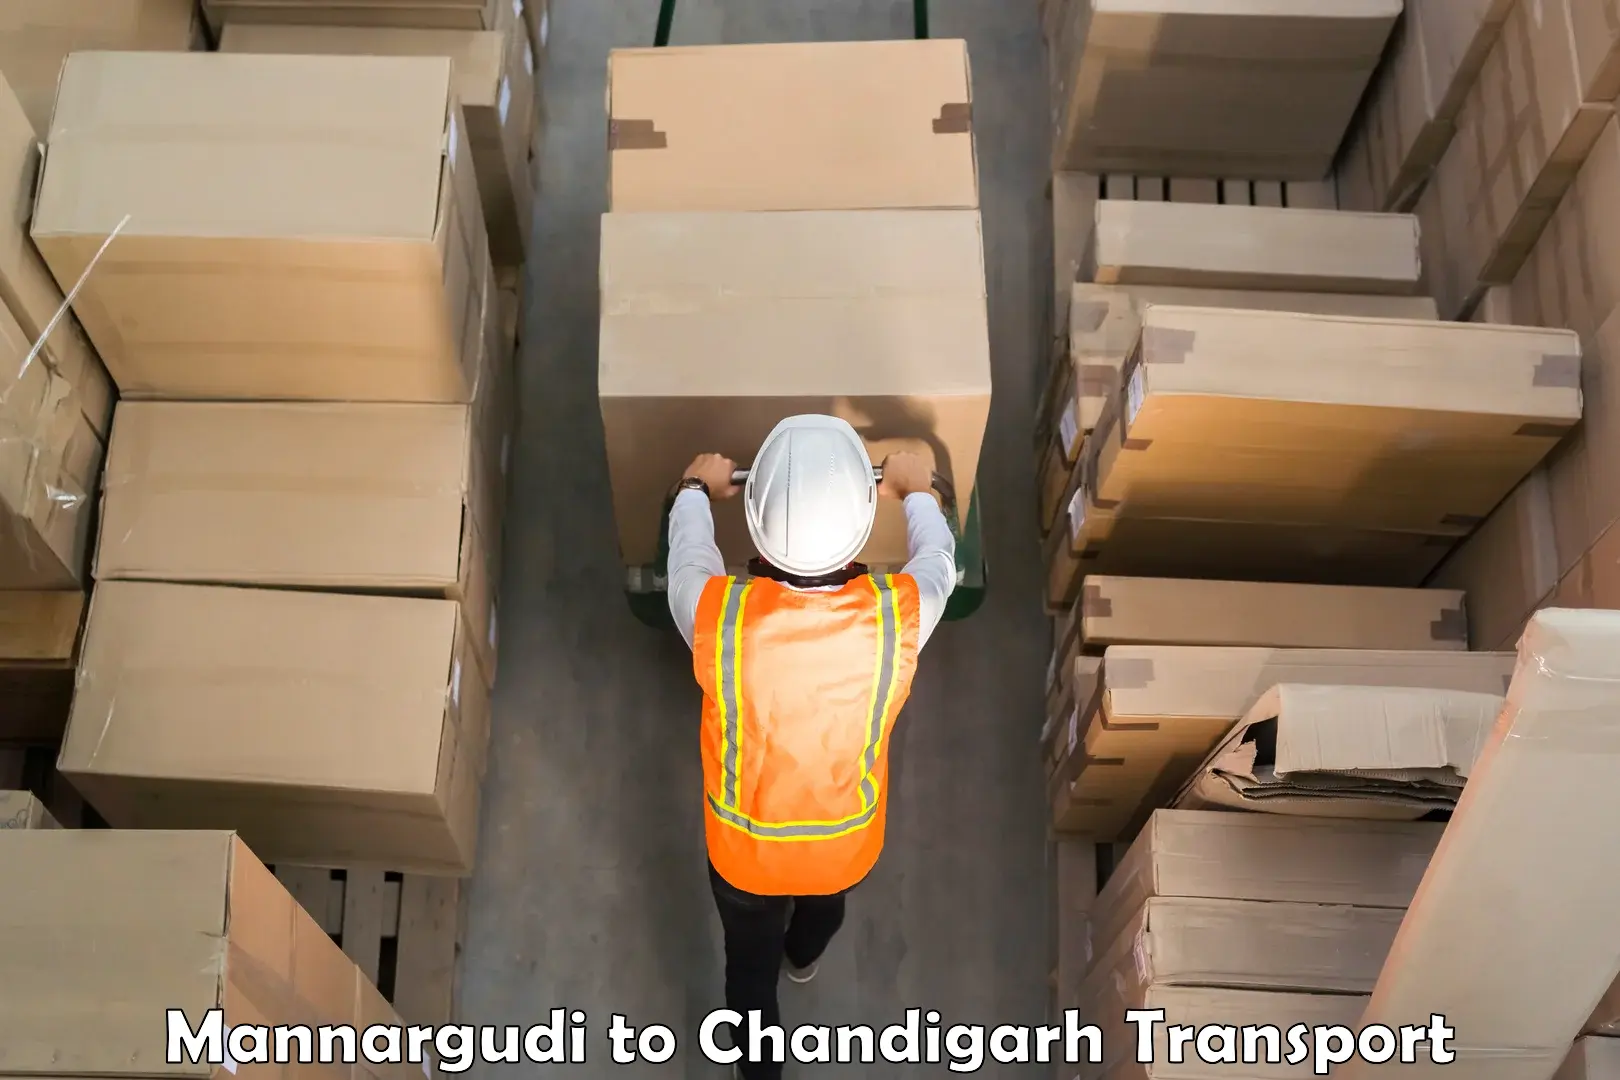 Nationwide transport services Mannargudi to Chandigarh